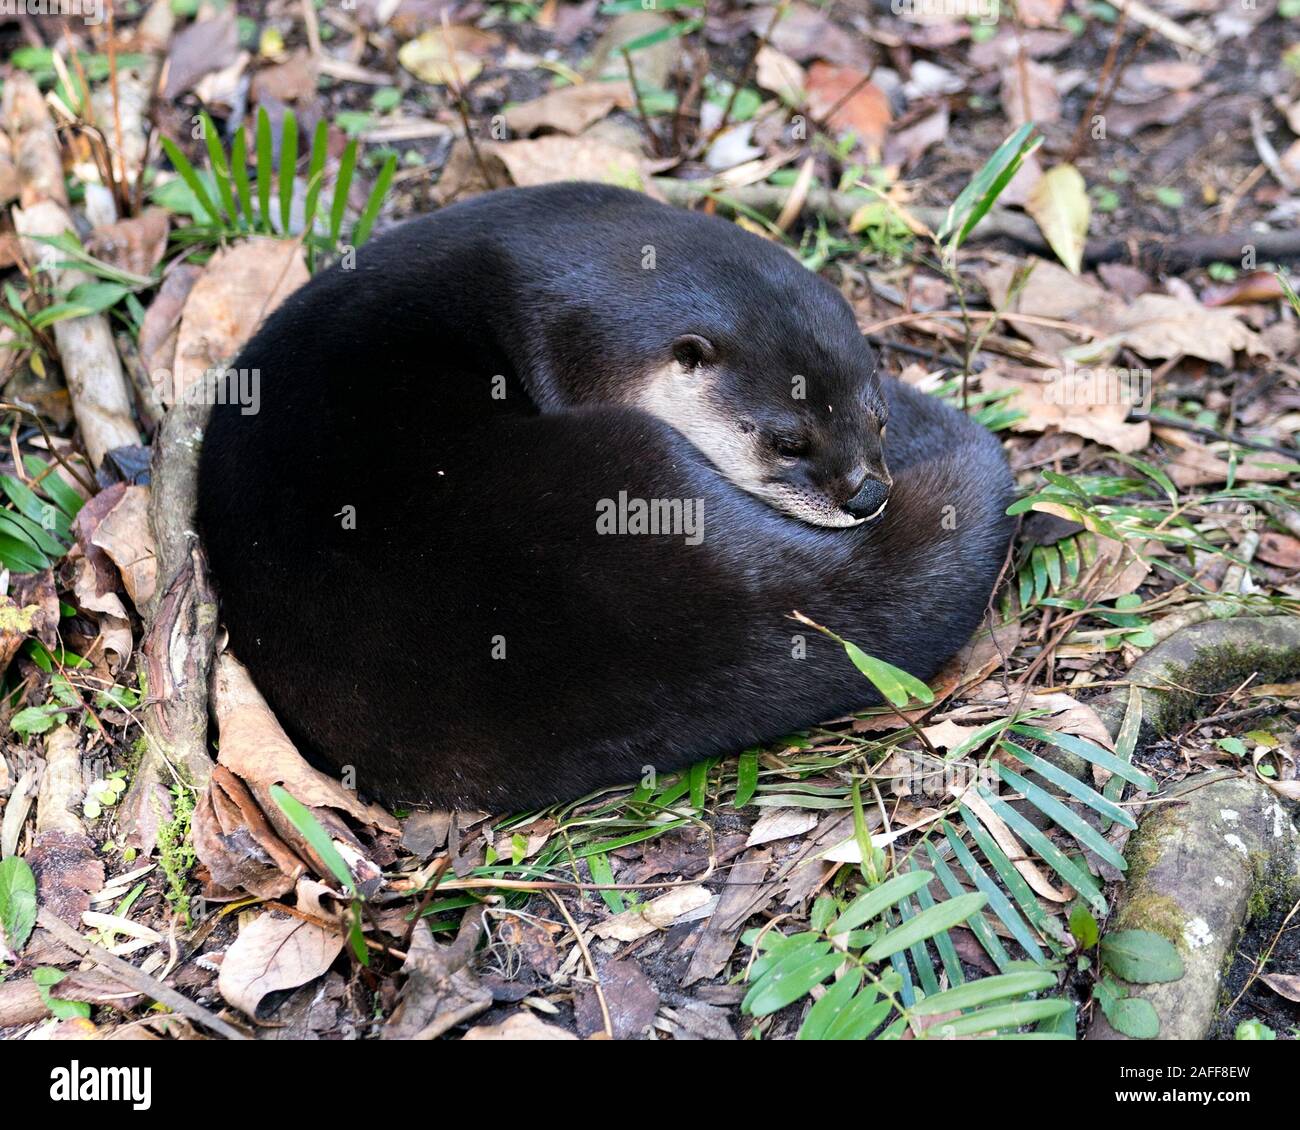 Animal Otter se reposant dans un lit de feuillage et affichant un pelage brun, corps, tête, nez, oreilles, yeux, la queue, les pattes dans son environnement et ses environs. Banque D'Images